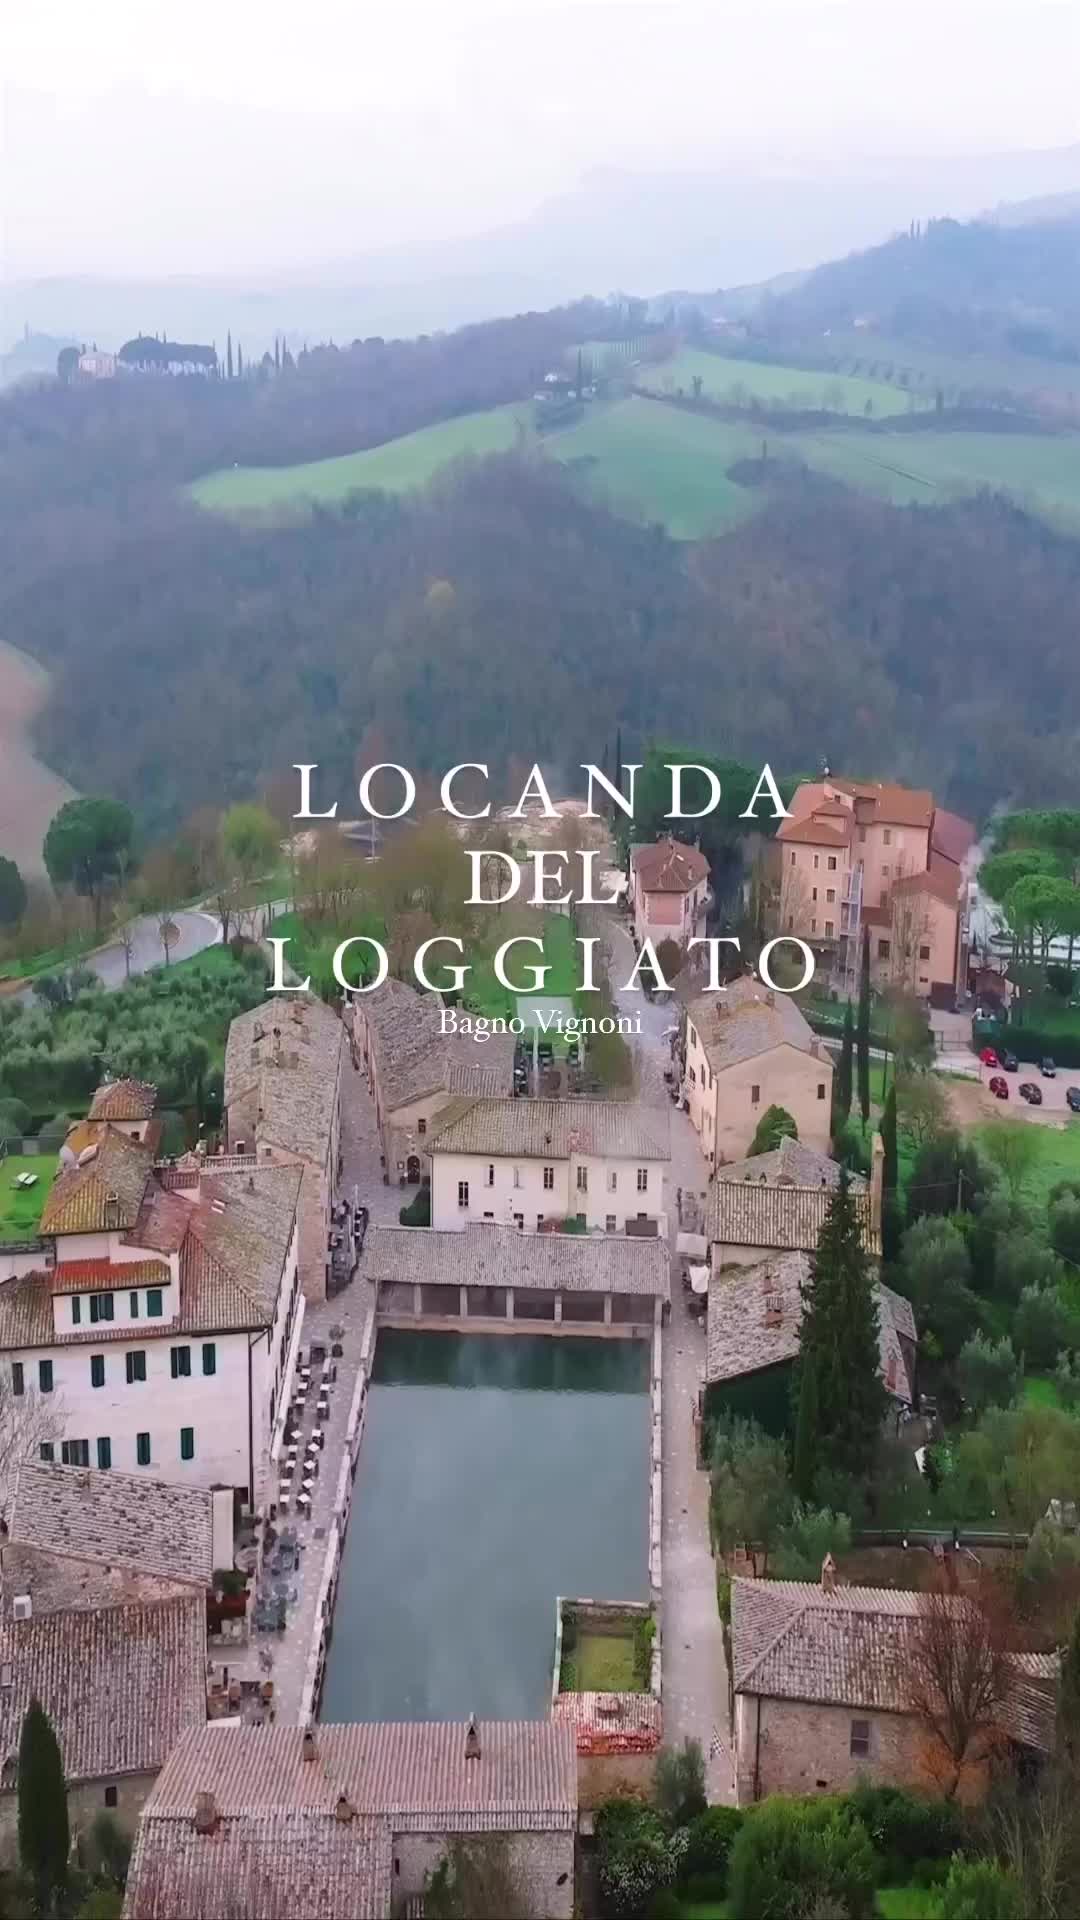 Locanda del Loggiato in Tuscany, Italy